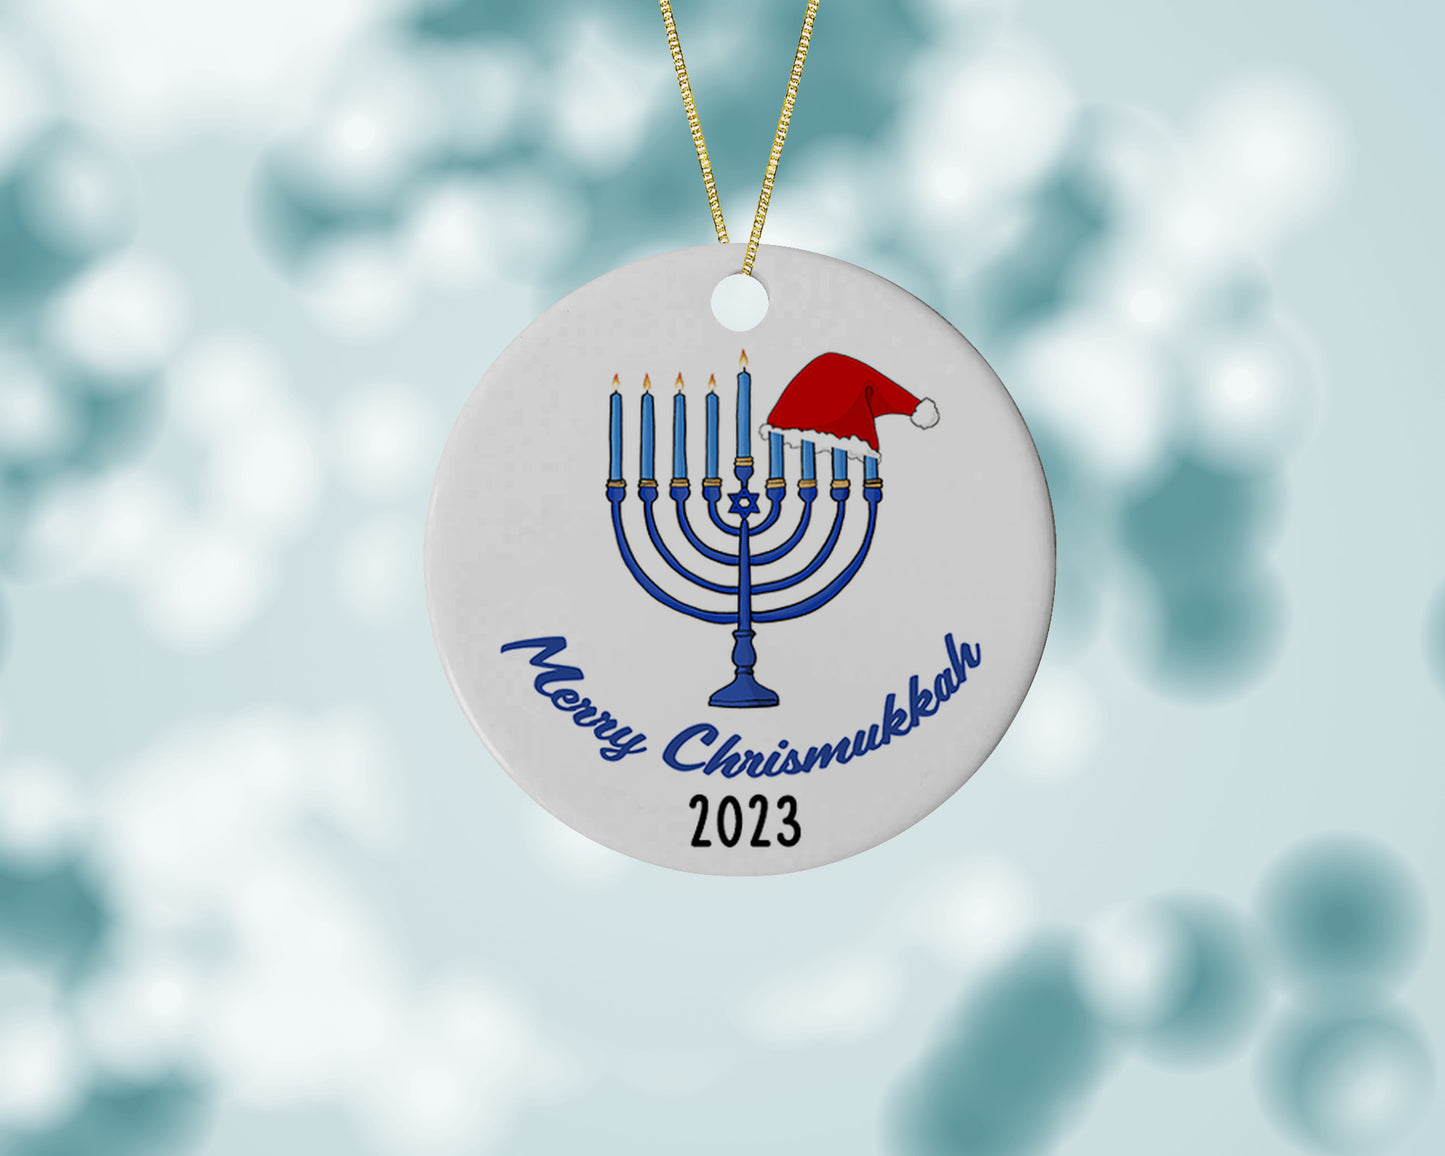 Merry Chrismukkah 2023 Ornament